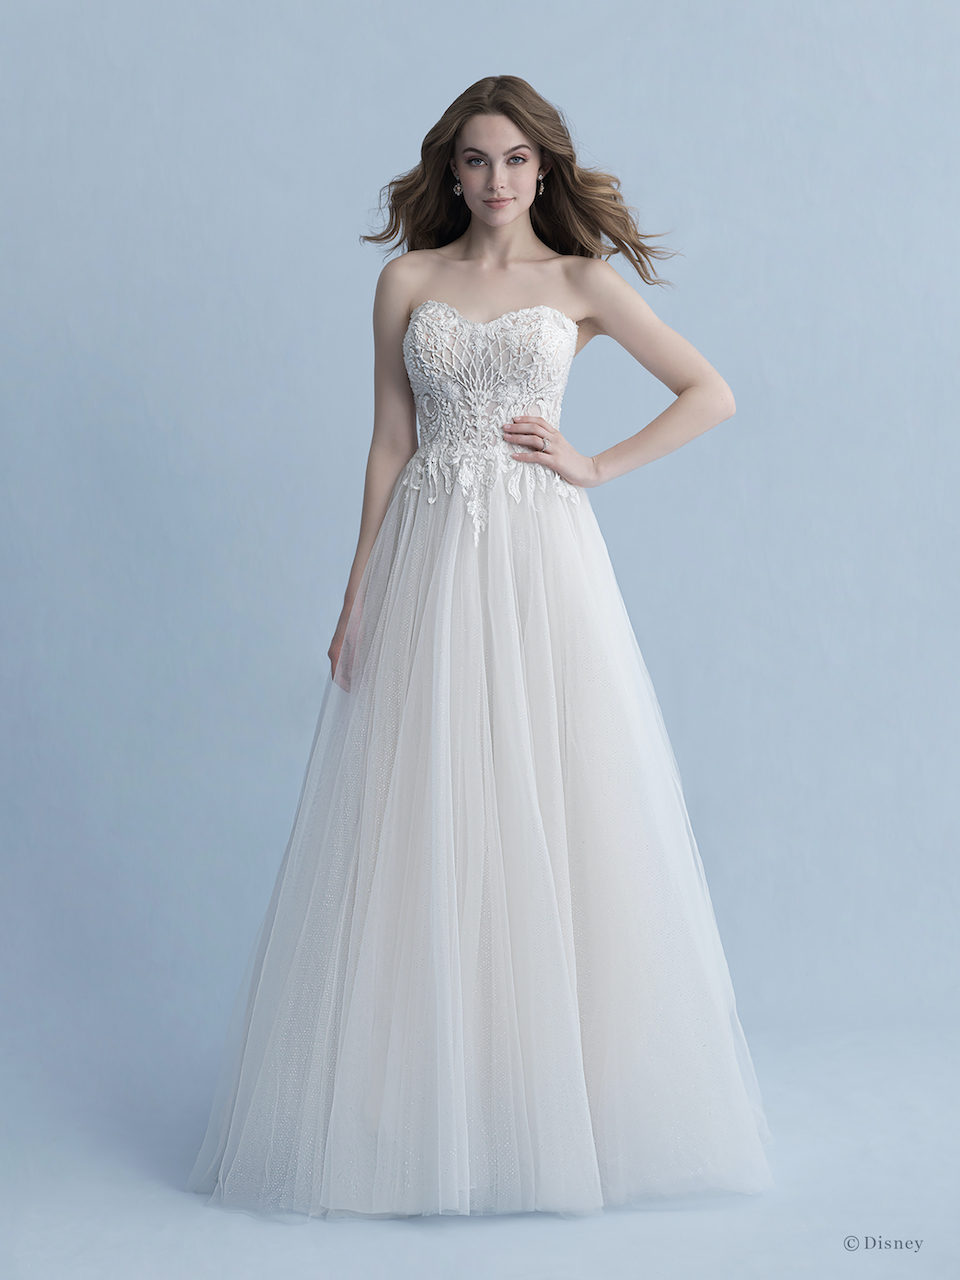 lace bodice chiffon skirt wedding dress